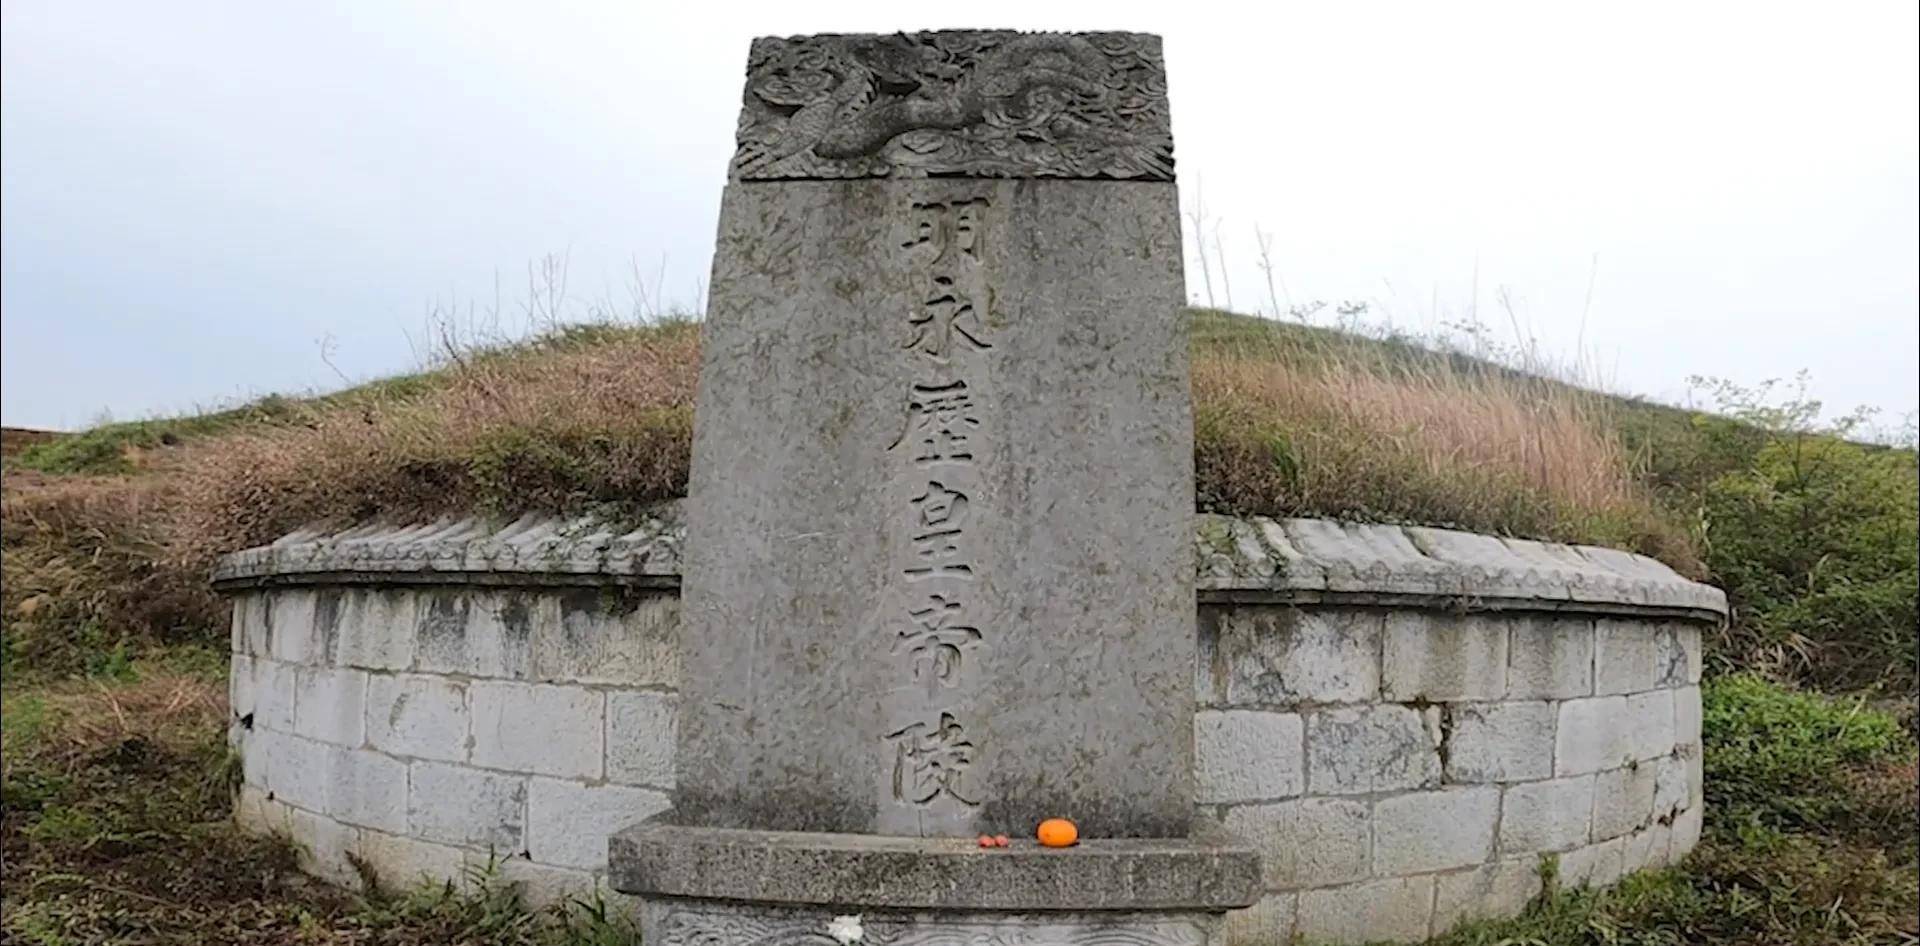 永历皇帝墓位于贵州省都匀市城东的大坪镇高塘山上,永历皇帝及其两位